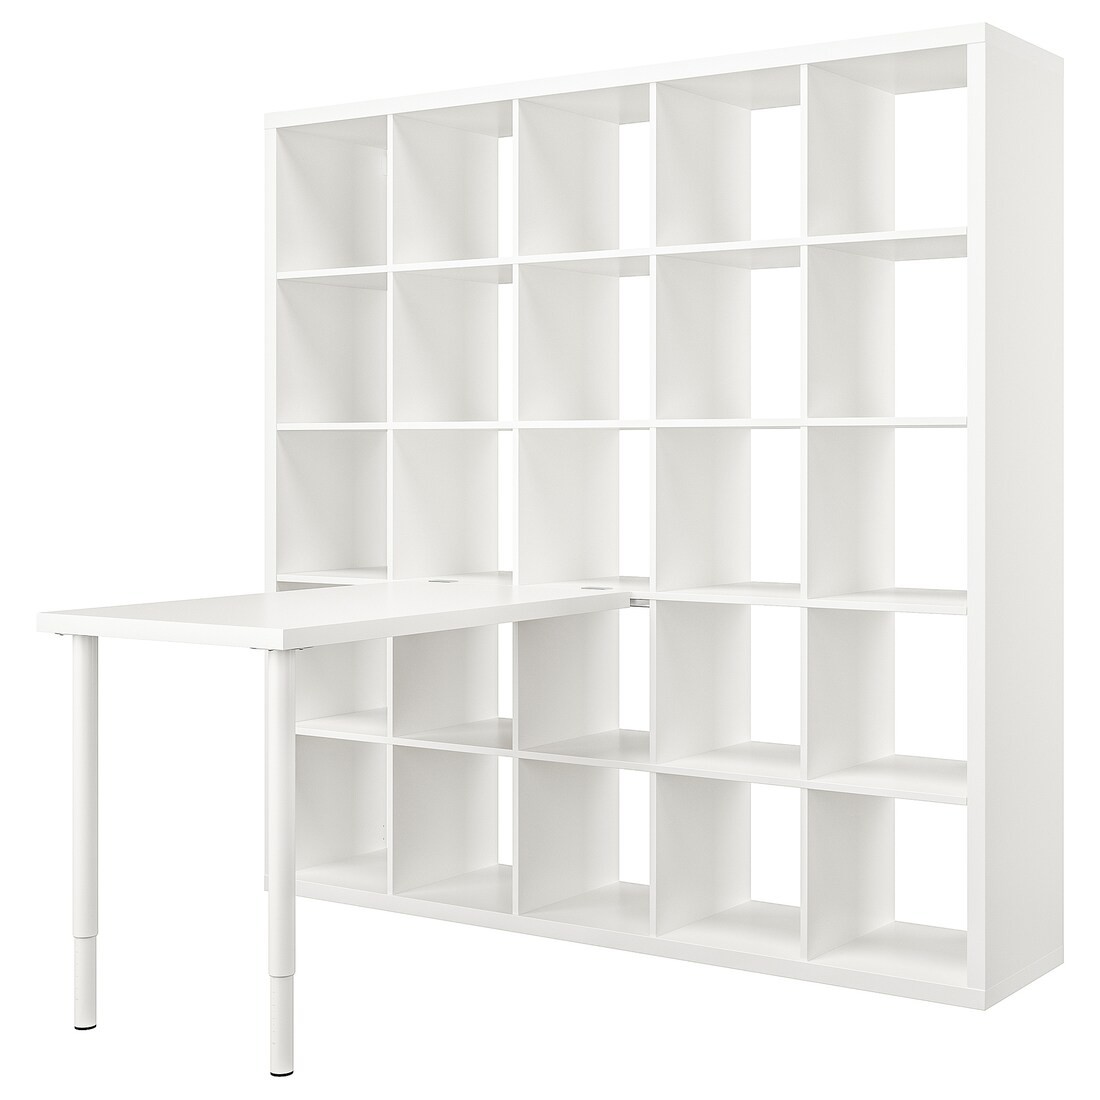 IKEA KALLAX КАЛЛАКС / LINNMON ЛІННМОН Письменный стол, белый, 182х139х182 см 09481698 094.816.98